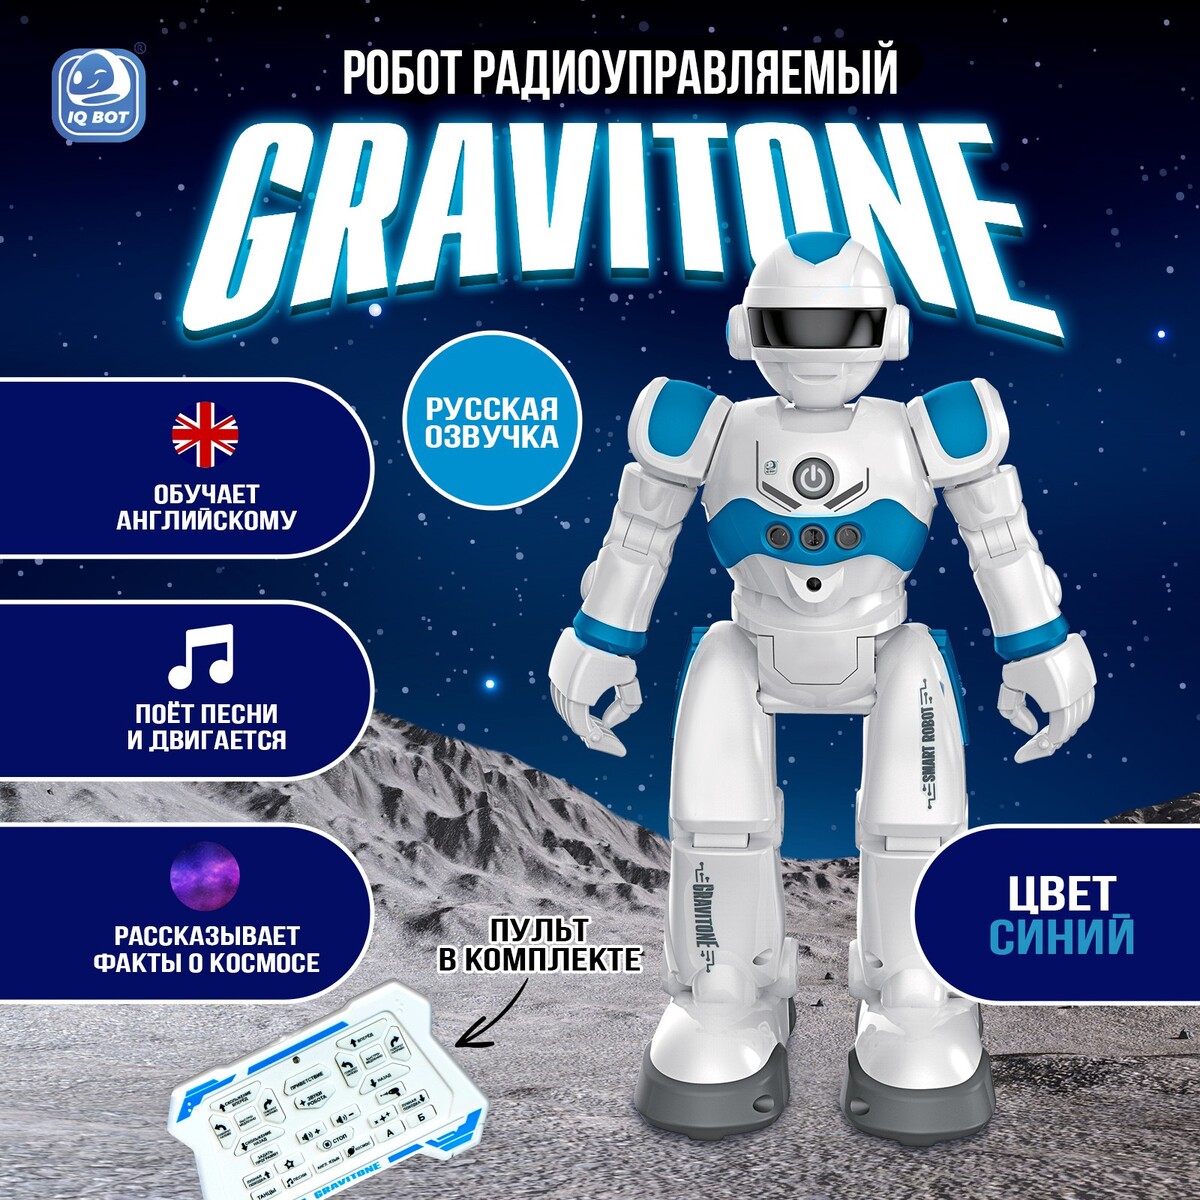 Робот радиоуправляемый iq bot gravitone, русское озвучивание, цвет синий мягкая игрушка mabuhome малыш кит синий